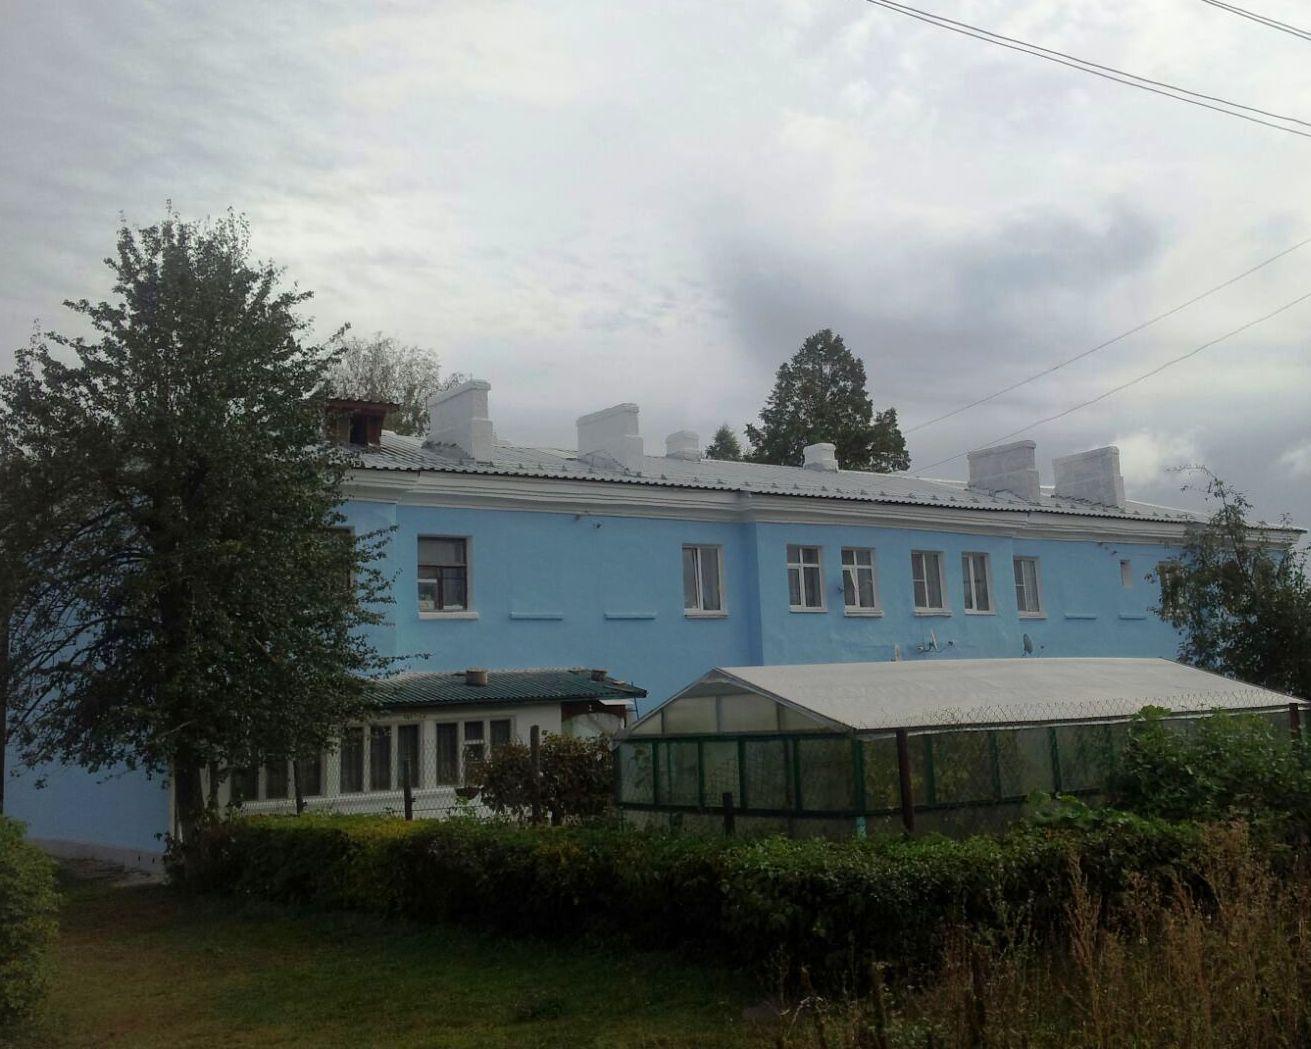 Дом после капитального ремонта в Новомосковске на улице Сборная д.№ 3.